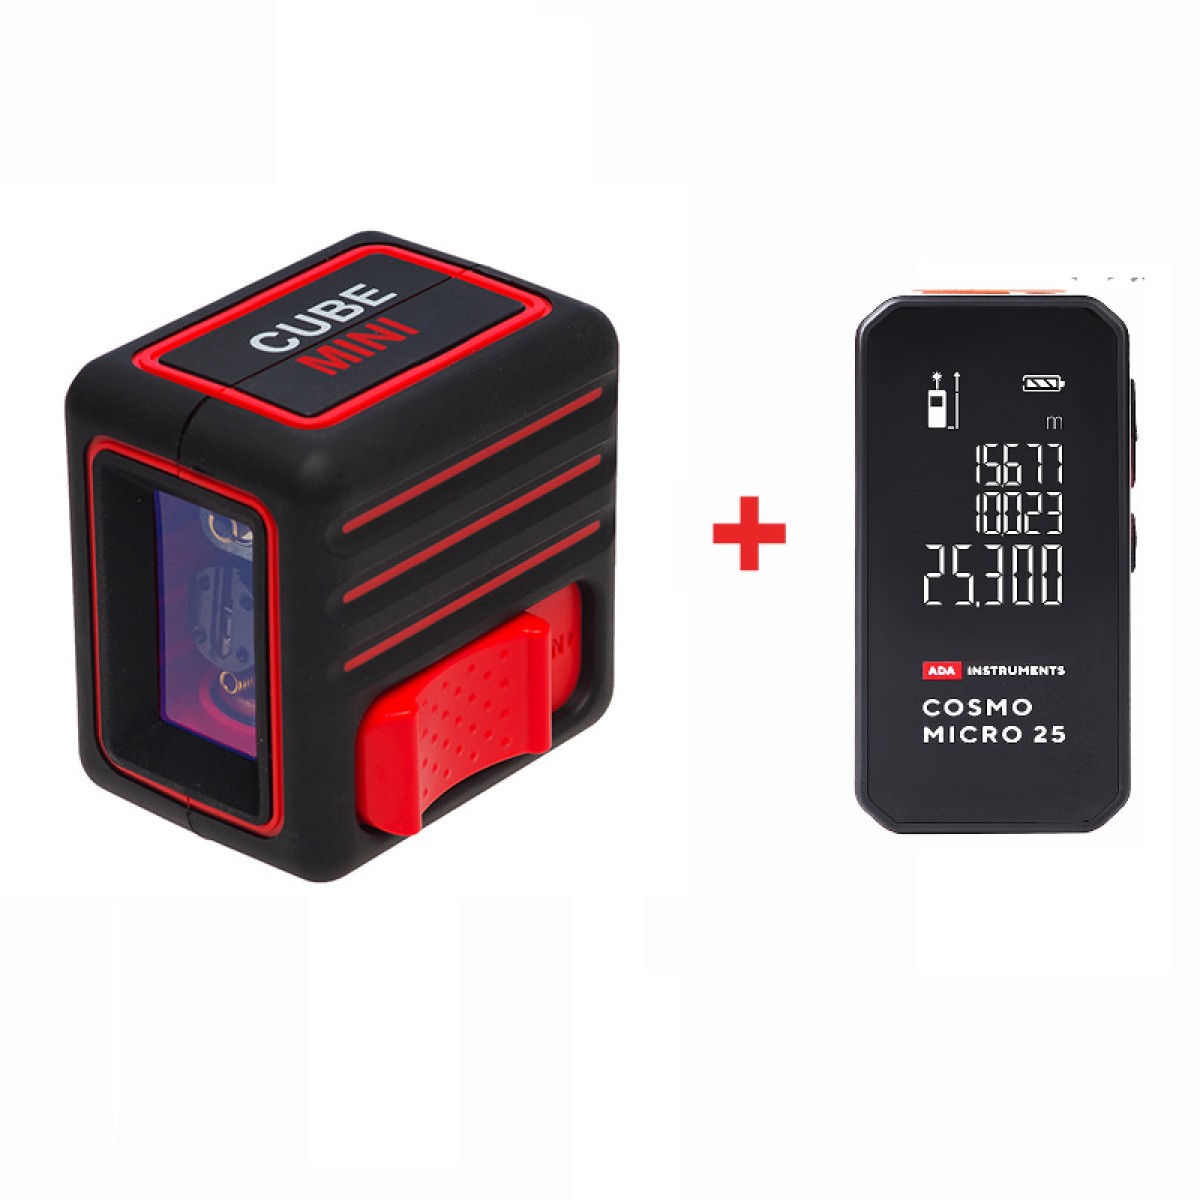 Уровень cube mini. Ada Cube Mini Basic + Cosmo Micro. Лазерный нивелир ada Cube Basic Edition. Лазерный уровень Cube Mini. Комплект ada: уровень Cube Mini Basic Edition + дальномер Cosmo Micro 25 а00690.